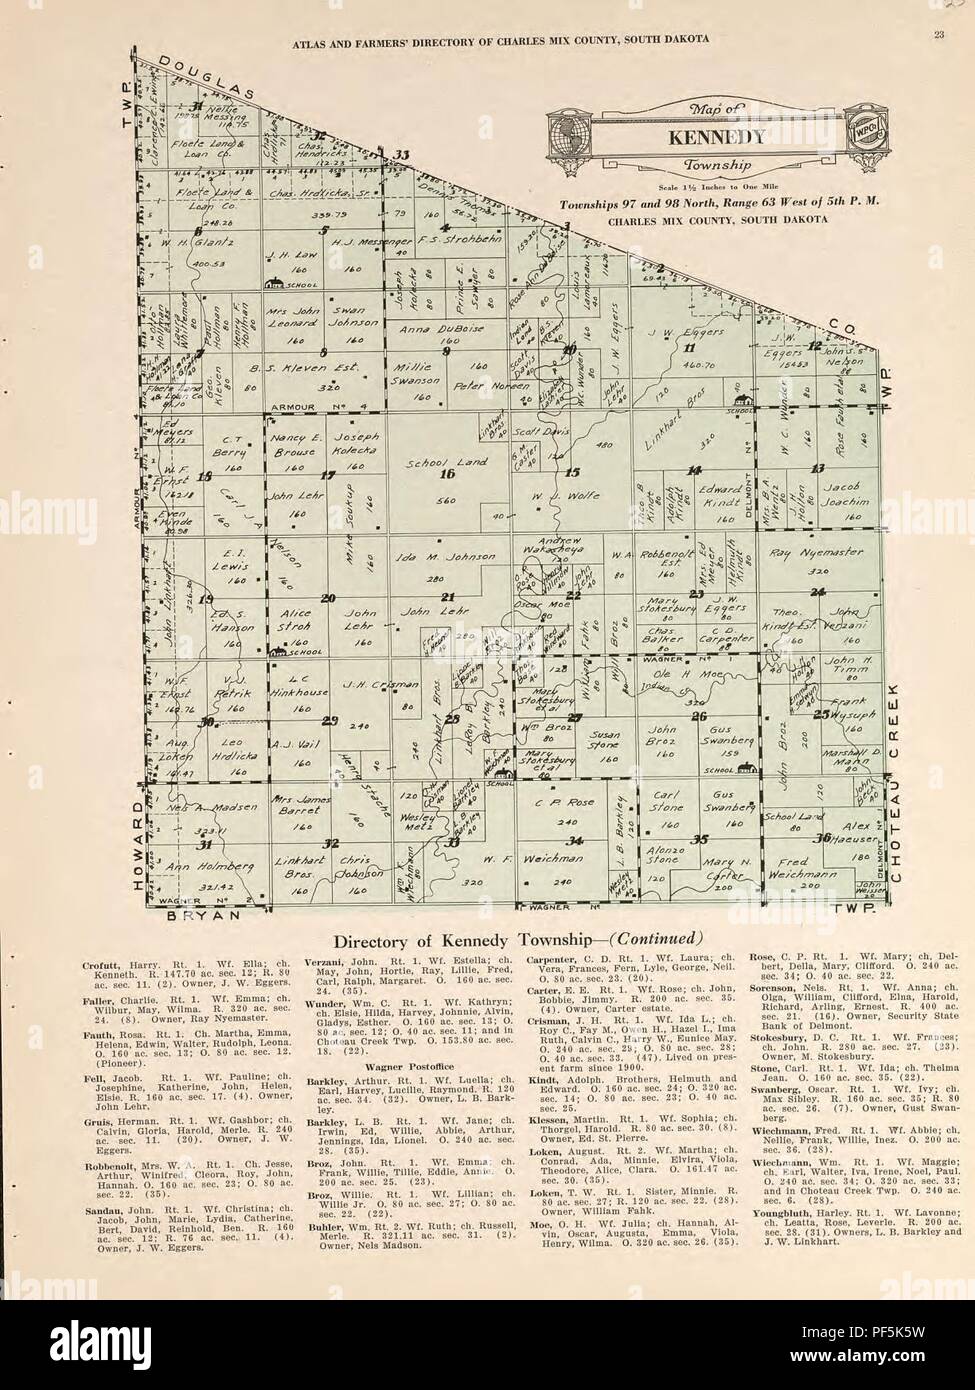 Atlas e gli agricoltori' directory di Charles Mix County, Dakota del Sud - contenente le mappe catastali di tutti i comuni con i proprietari dei nomi, una mappa di contorno della contea e una mappa dello stato del Sud Dakota, compilato da Foto Stock